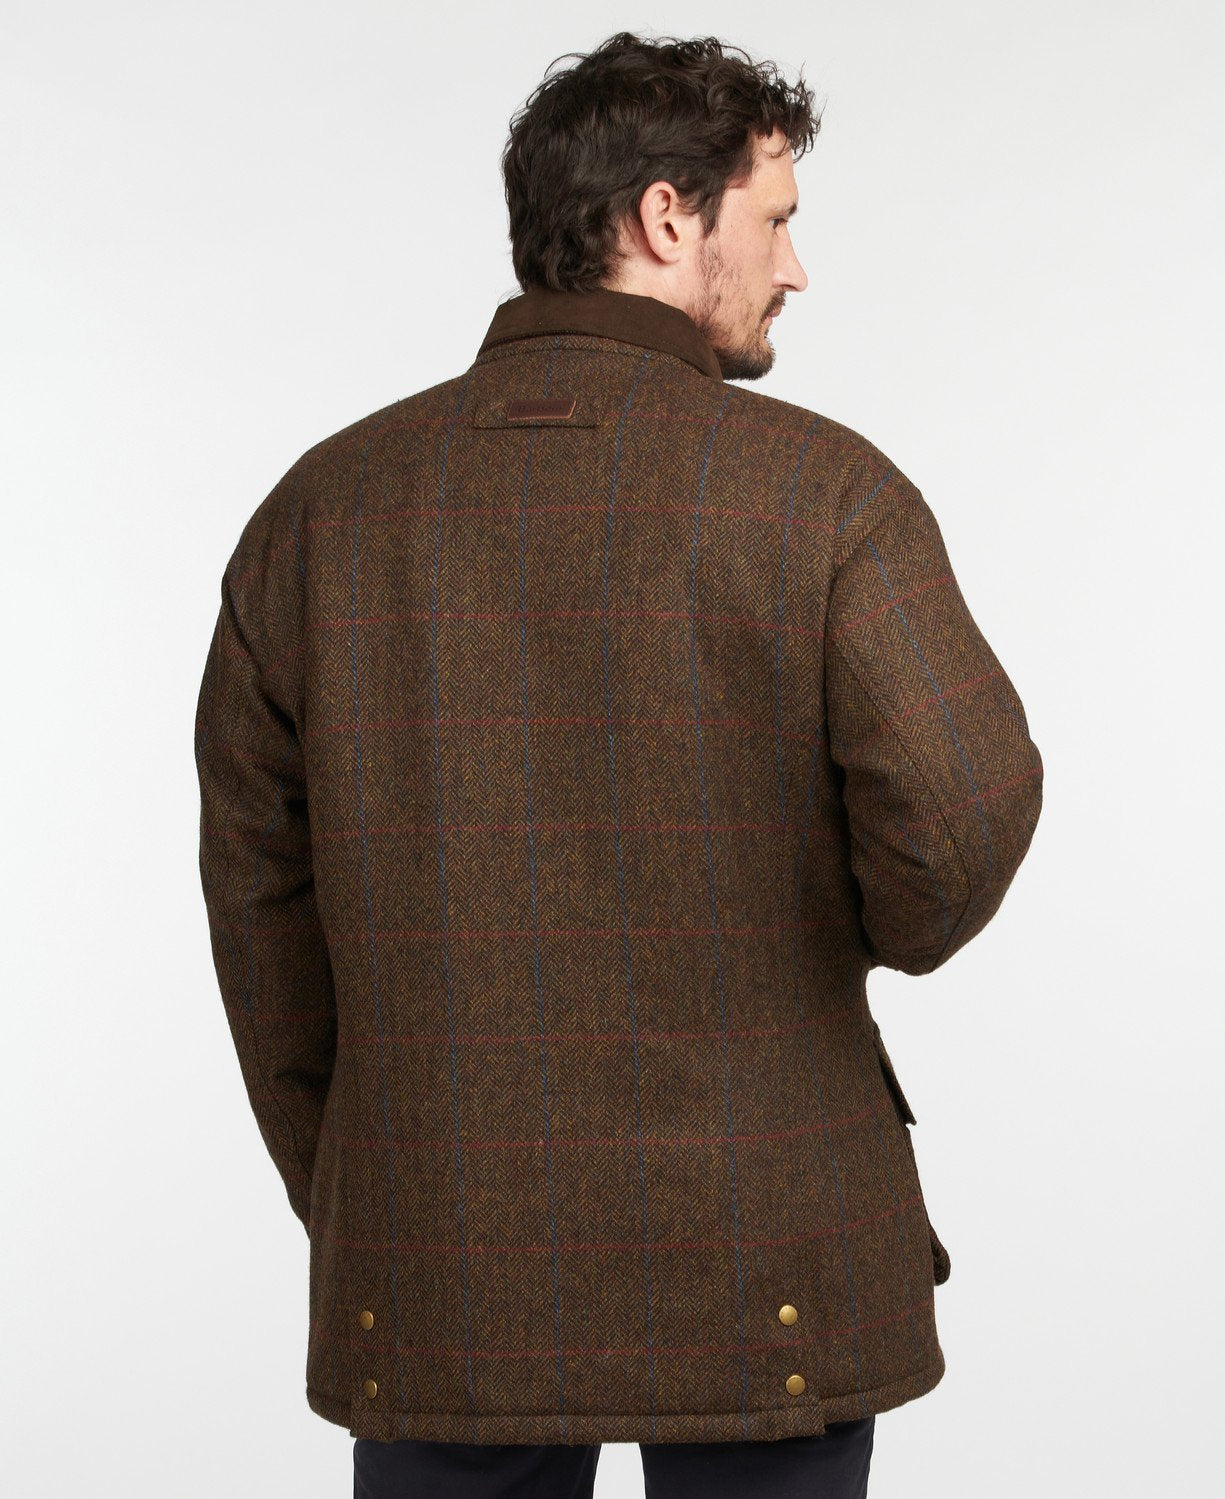 Penrith wool tweed jacket